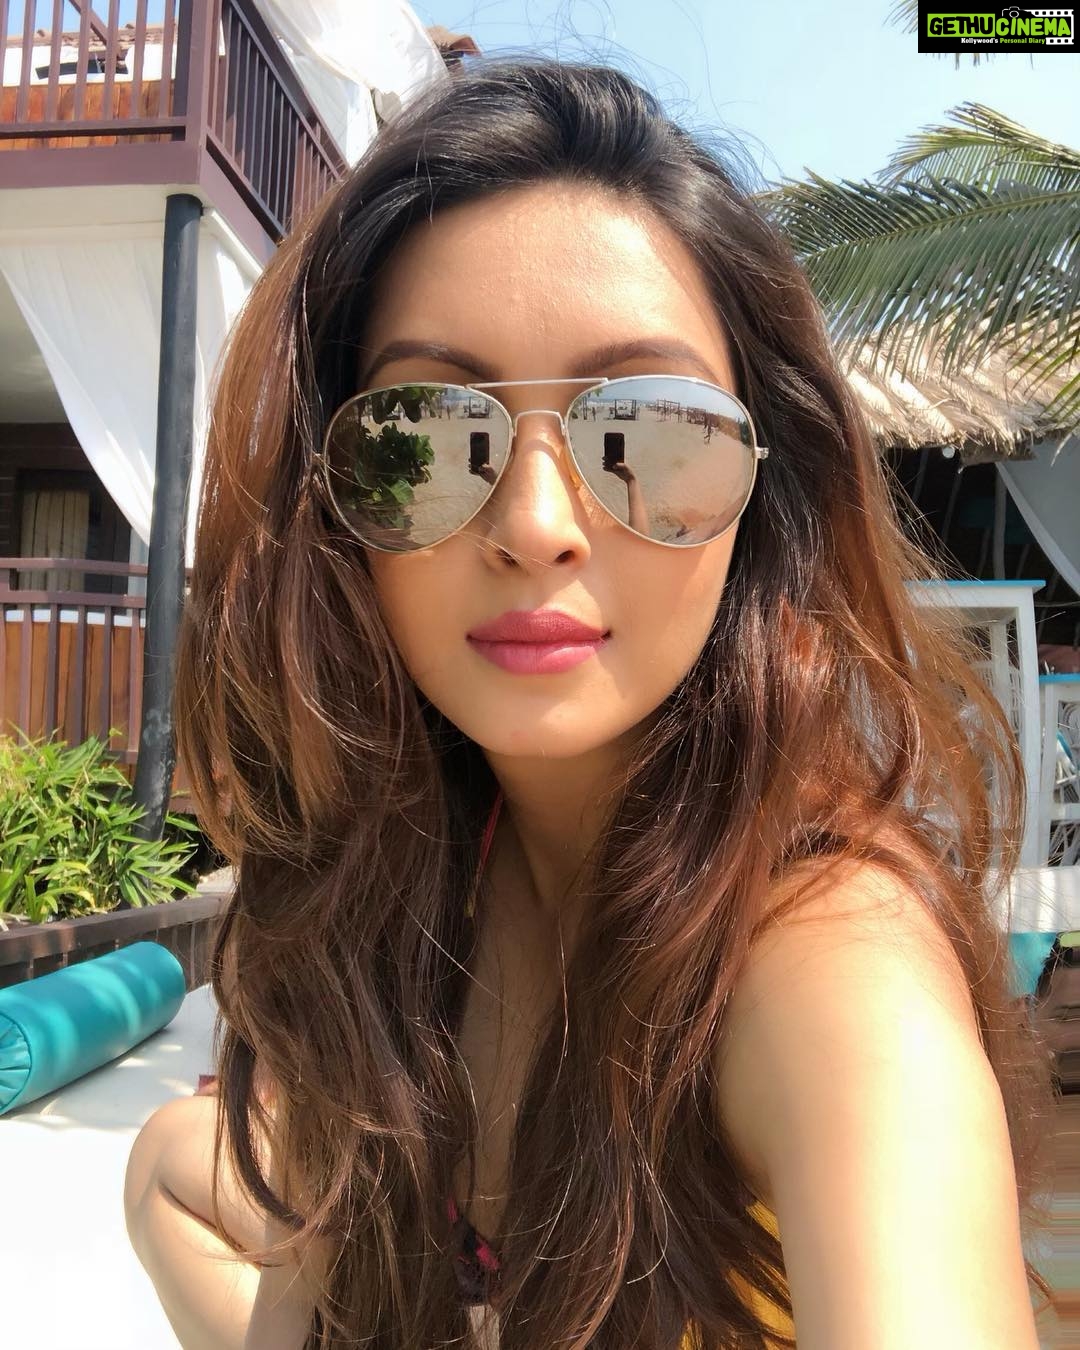 Pooja Salvi - 1.1K Likes - Most Liked Instagram Photos